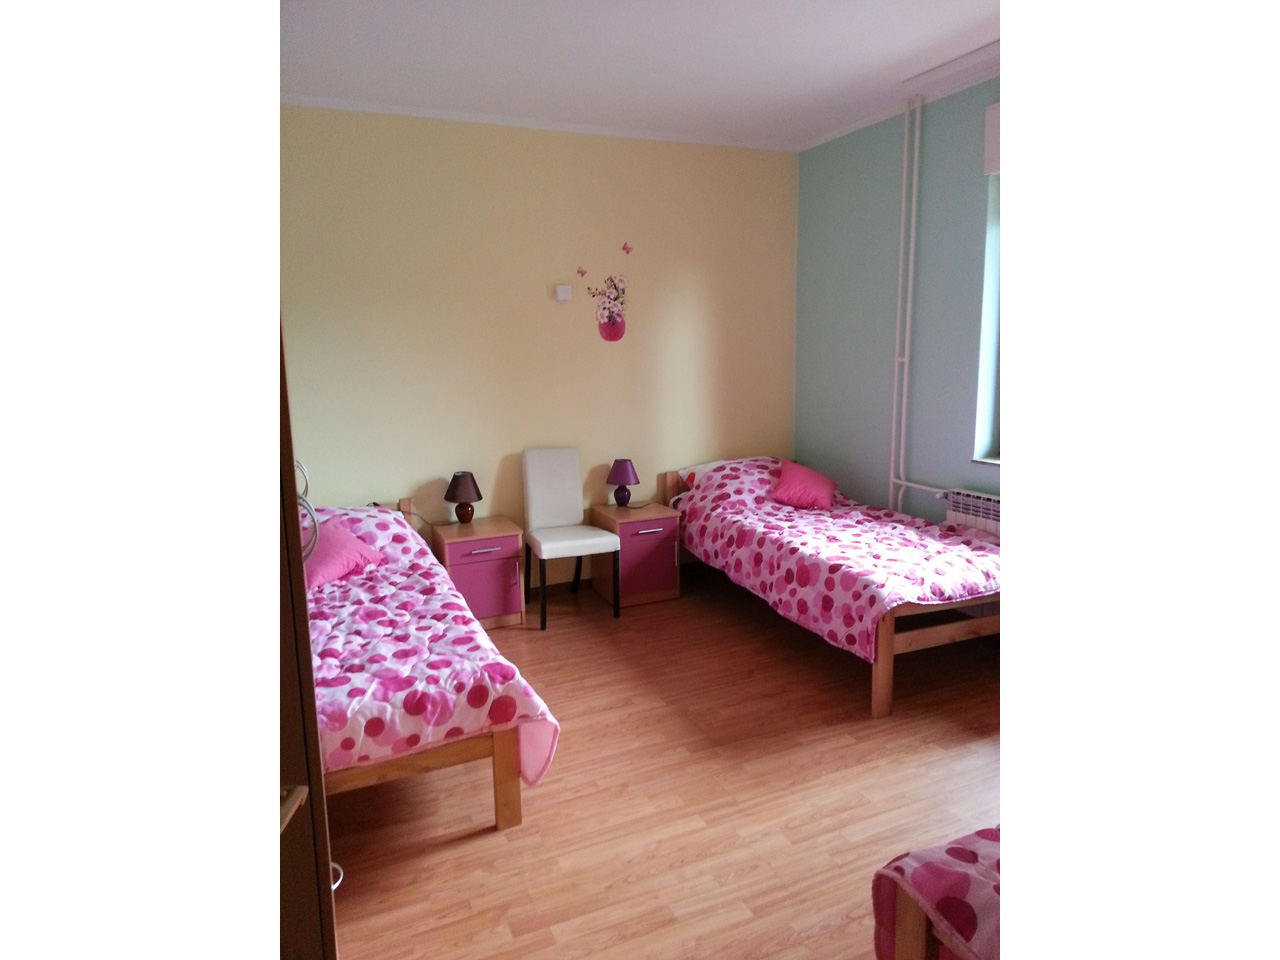 Photo 9 - HOME FOR OLD - ZARKOVACKI VRT Homes and care for the elderly Belgrade